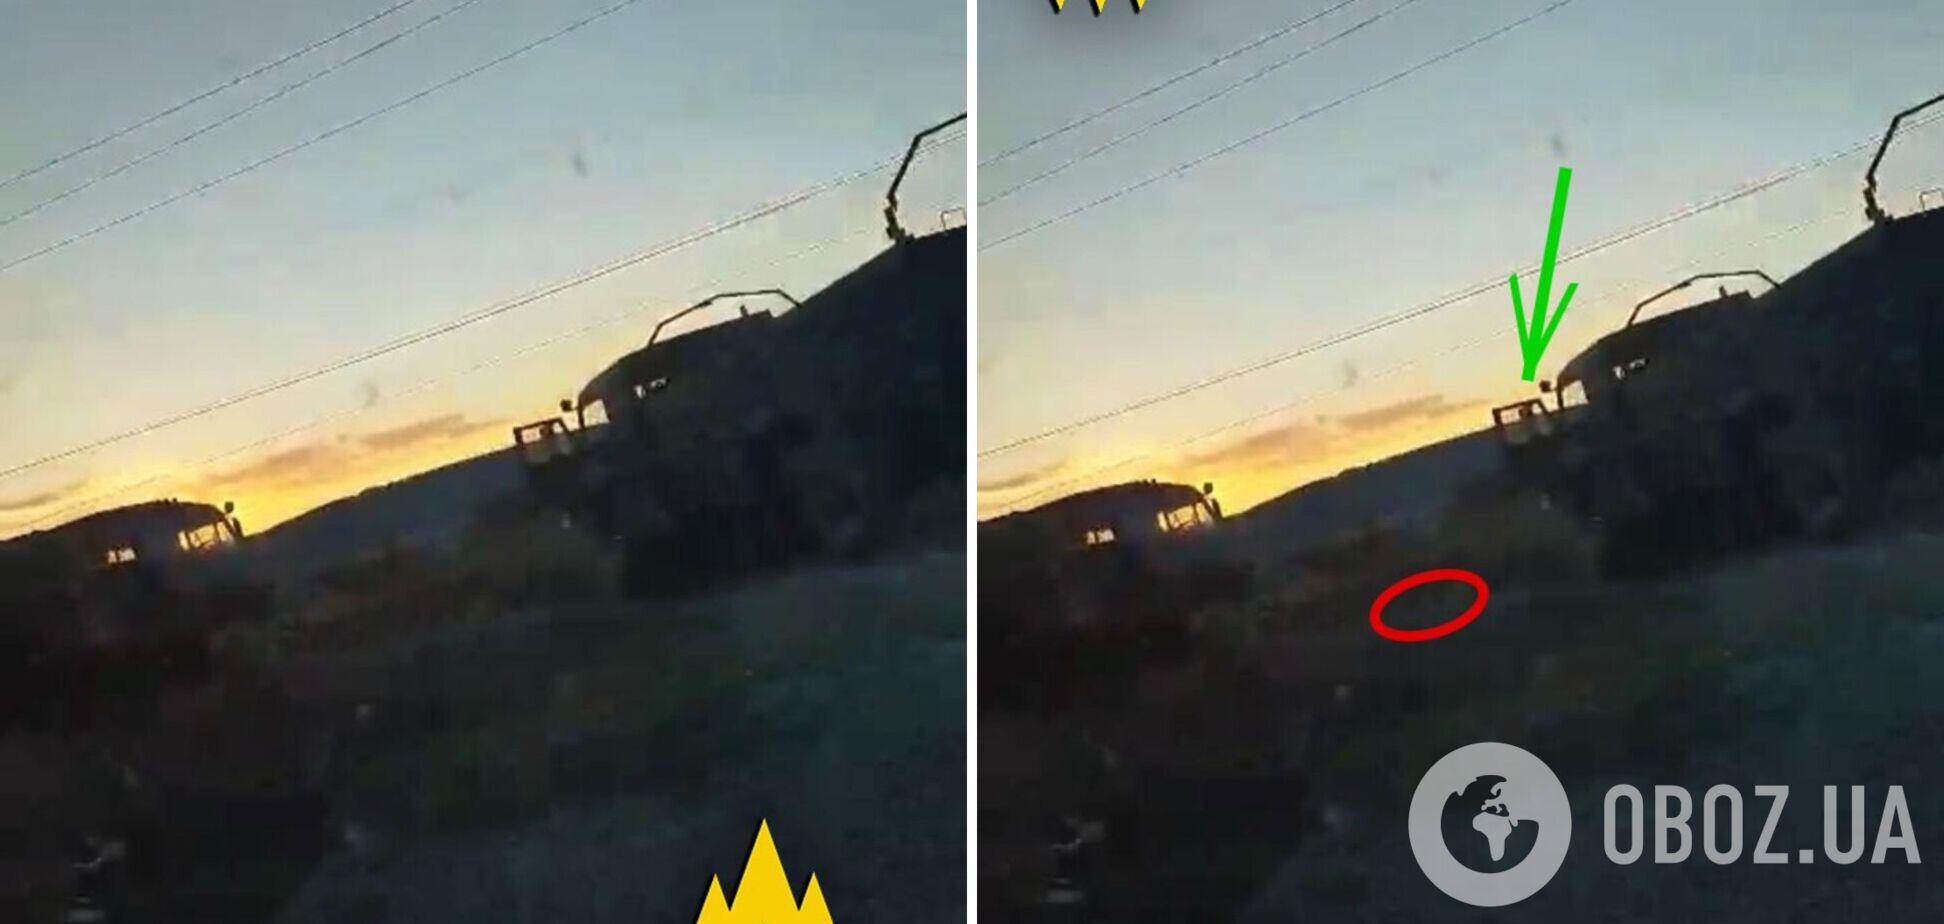 Партизаны 'Атеш' в Геническе взорвали два грузовика с оккупантами. Фото